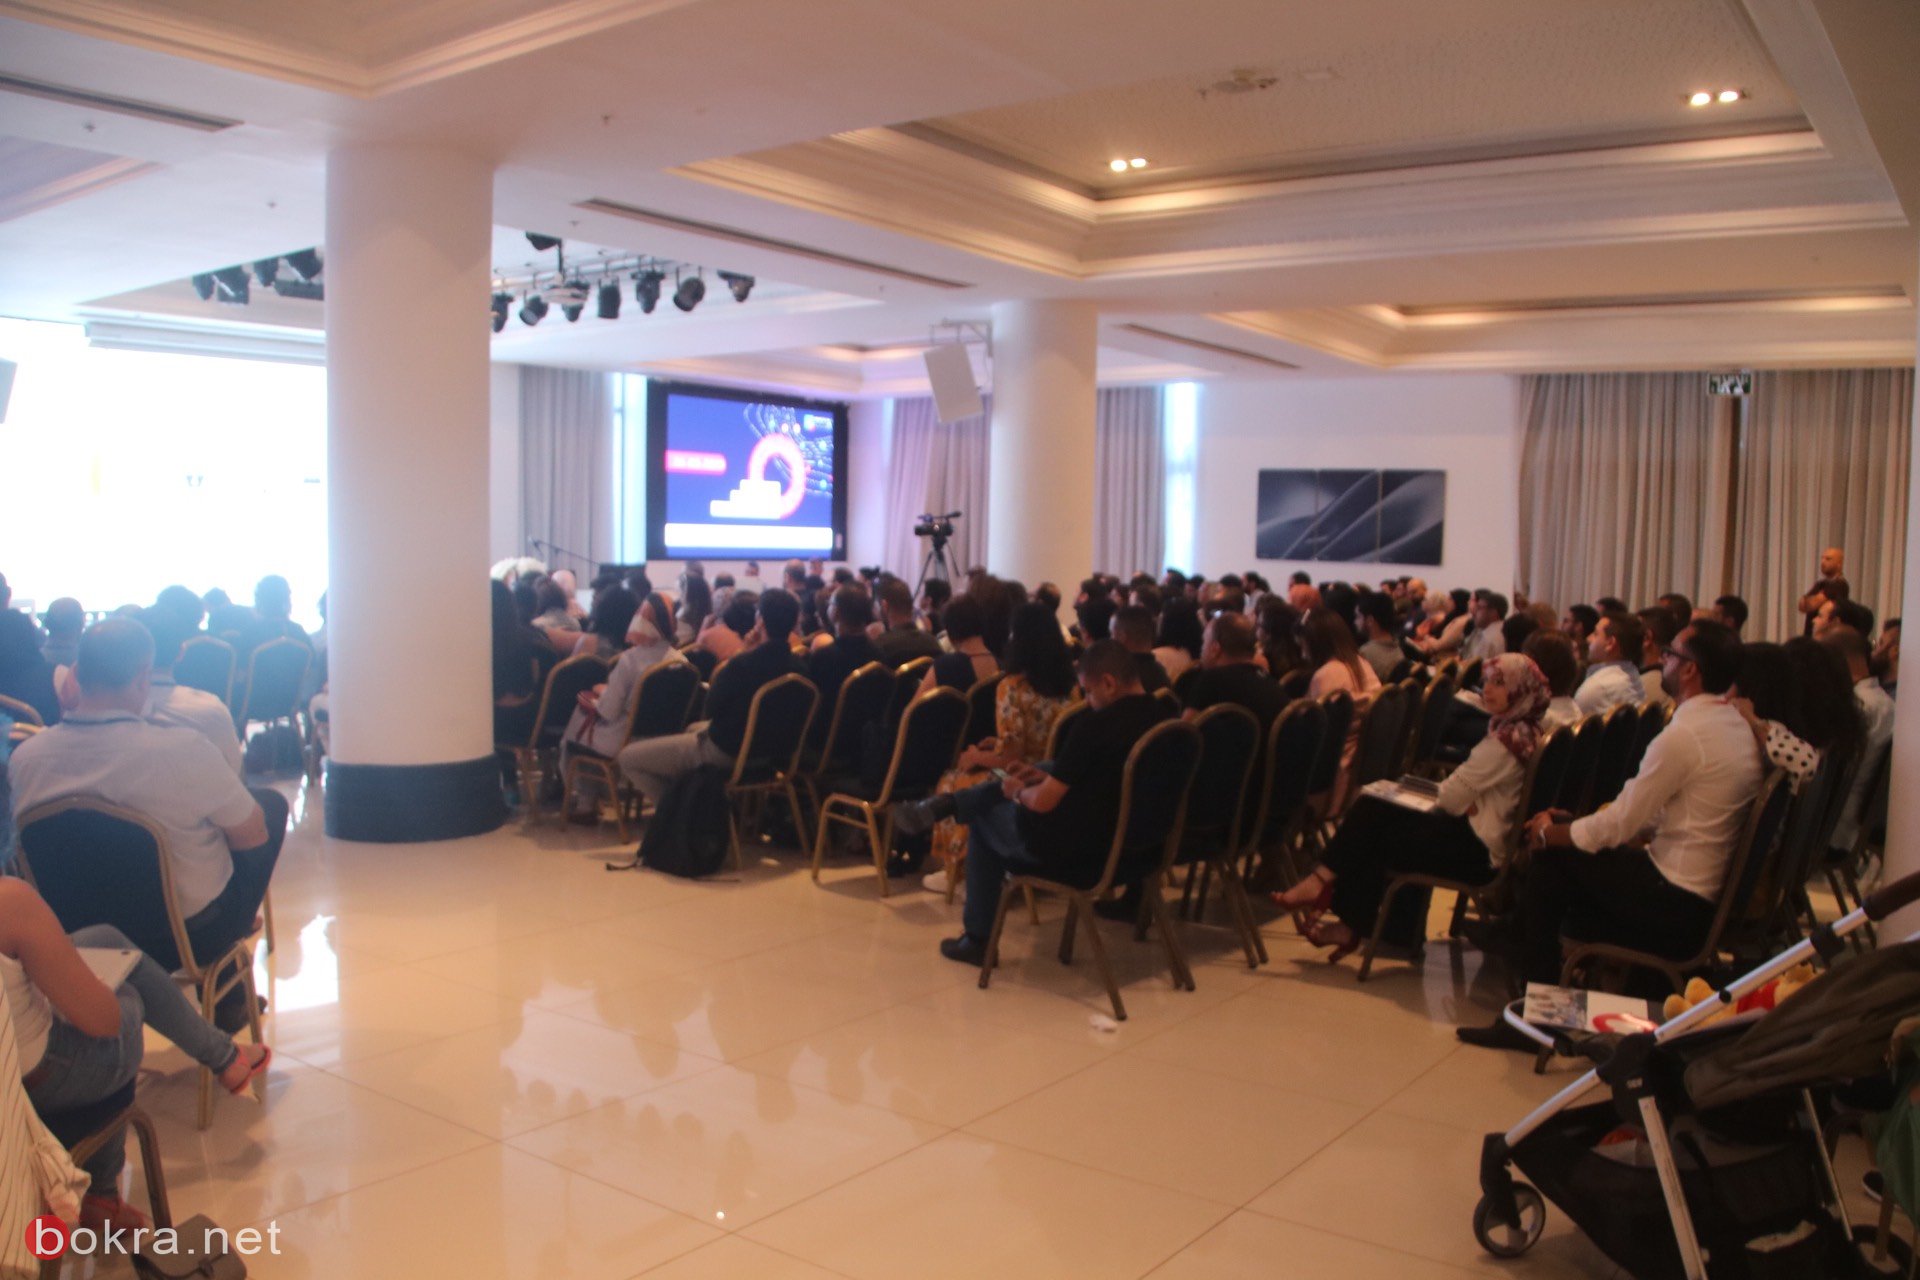 حيفا: مشاركة واسعة في مؤتمر "وصول" حول آخر التطورات في قنوات التسويق الرقمي-26